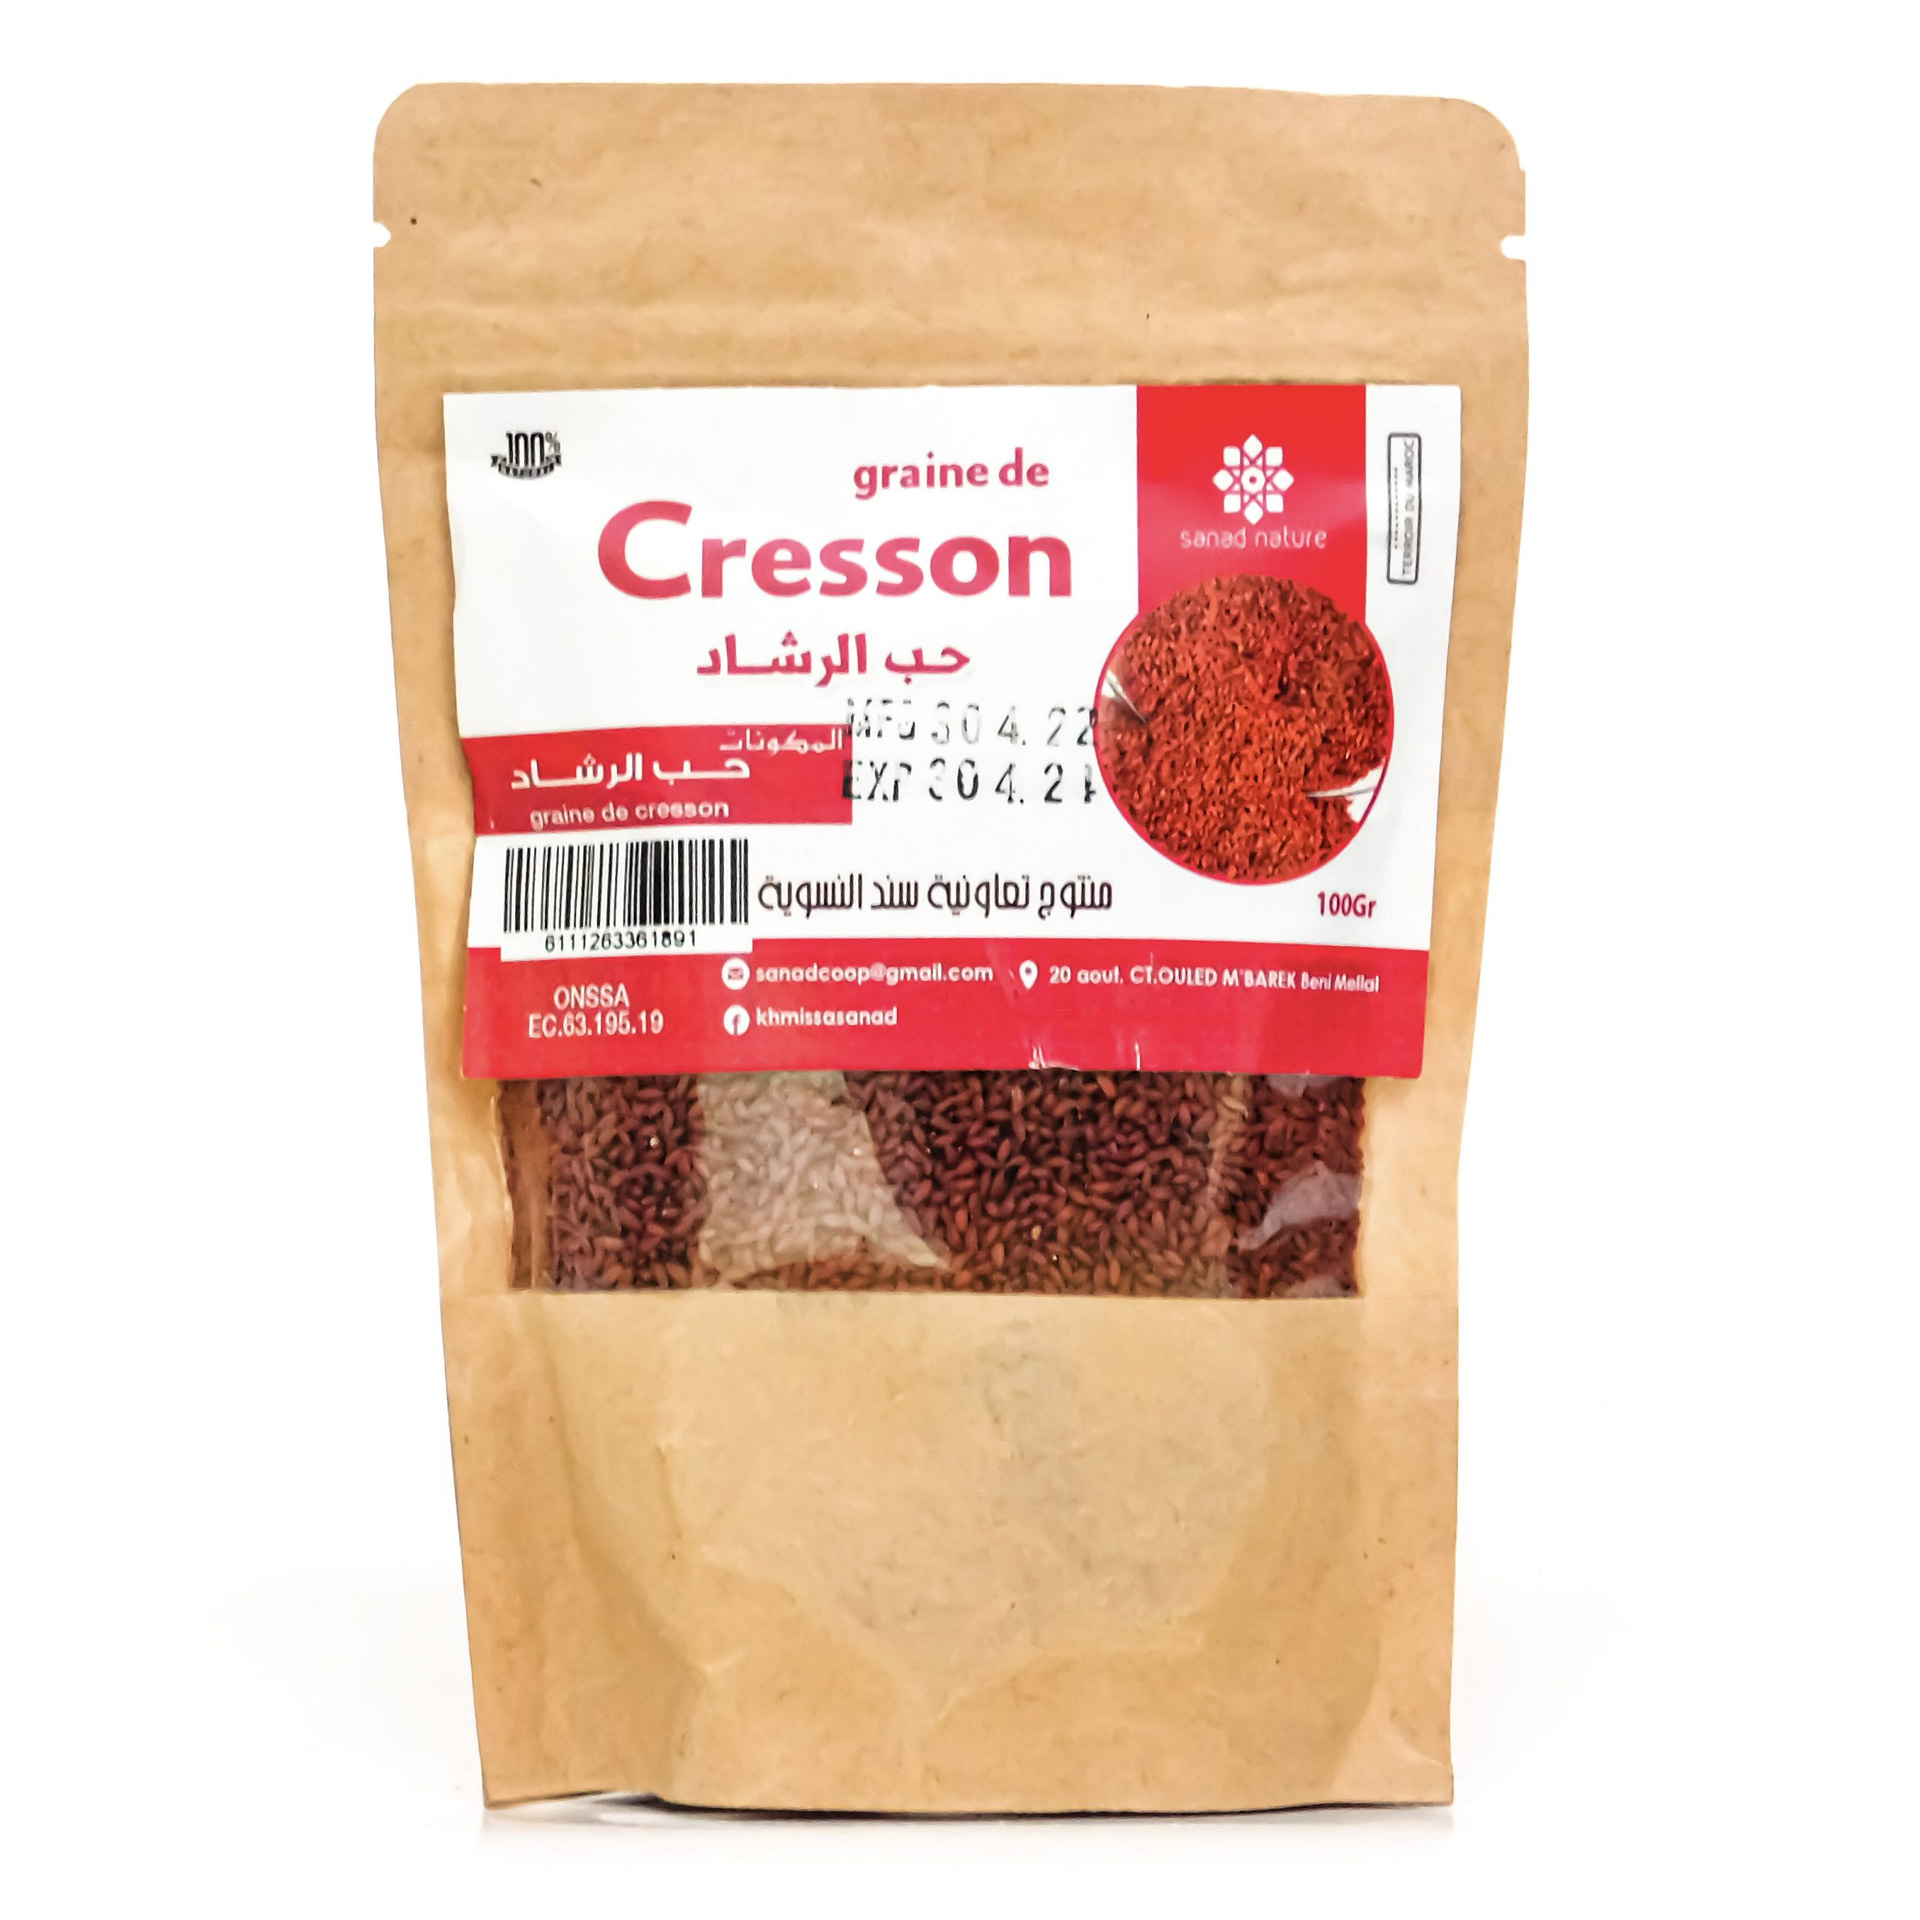 Graines de cresson (Heb Arched) - 40 g net - حب الرشاد - الثفاء